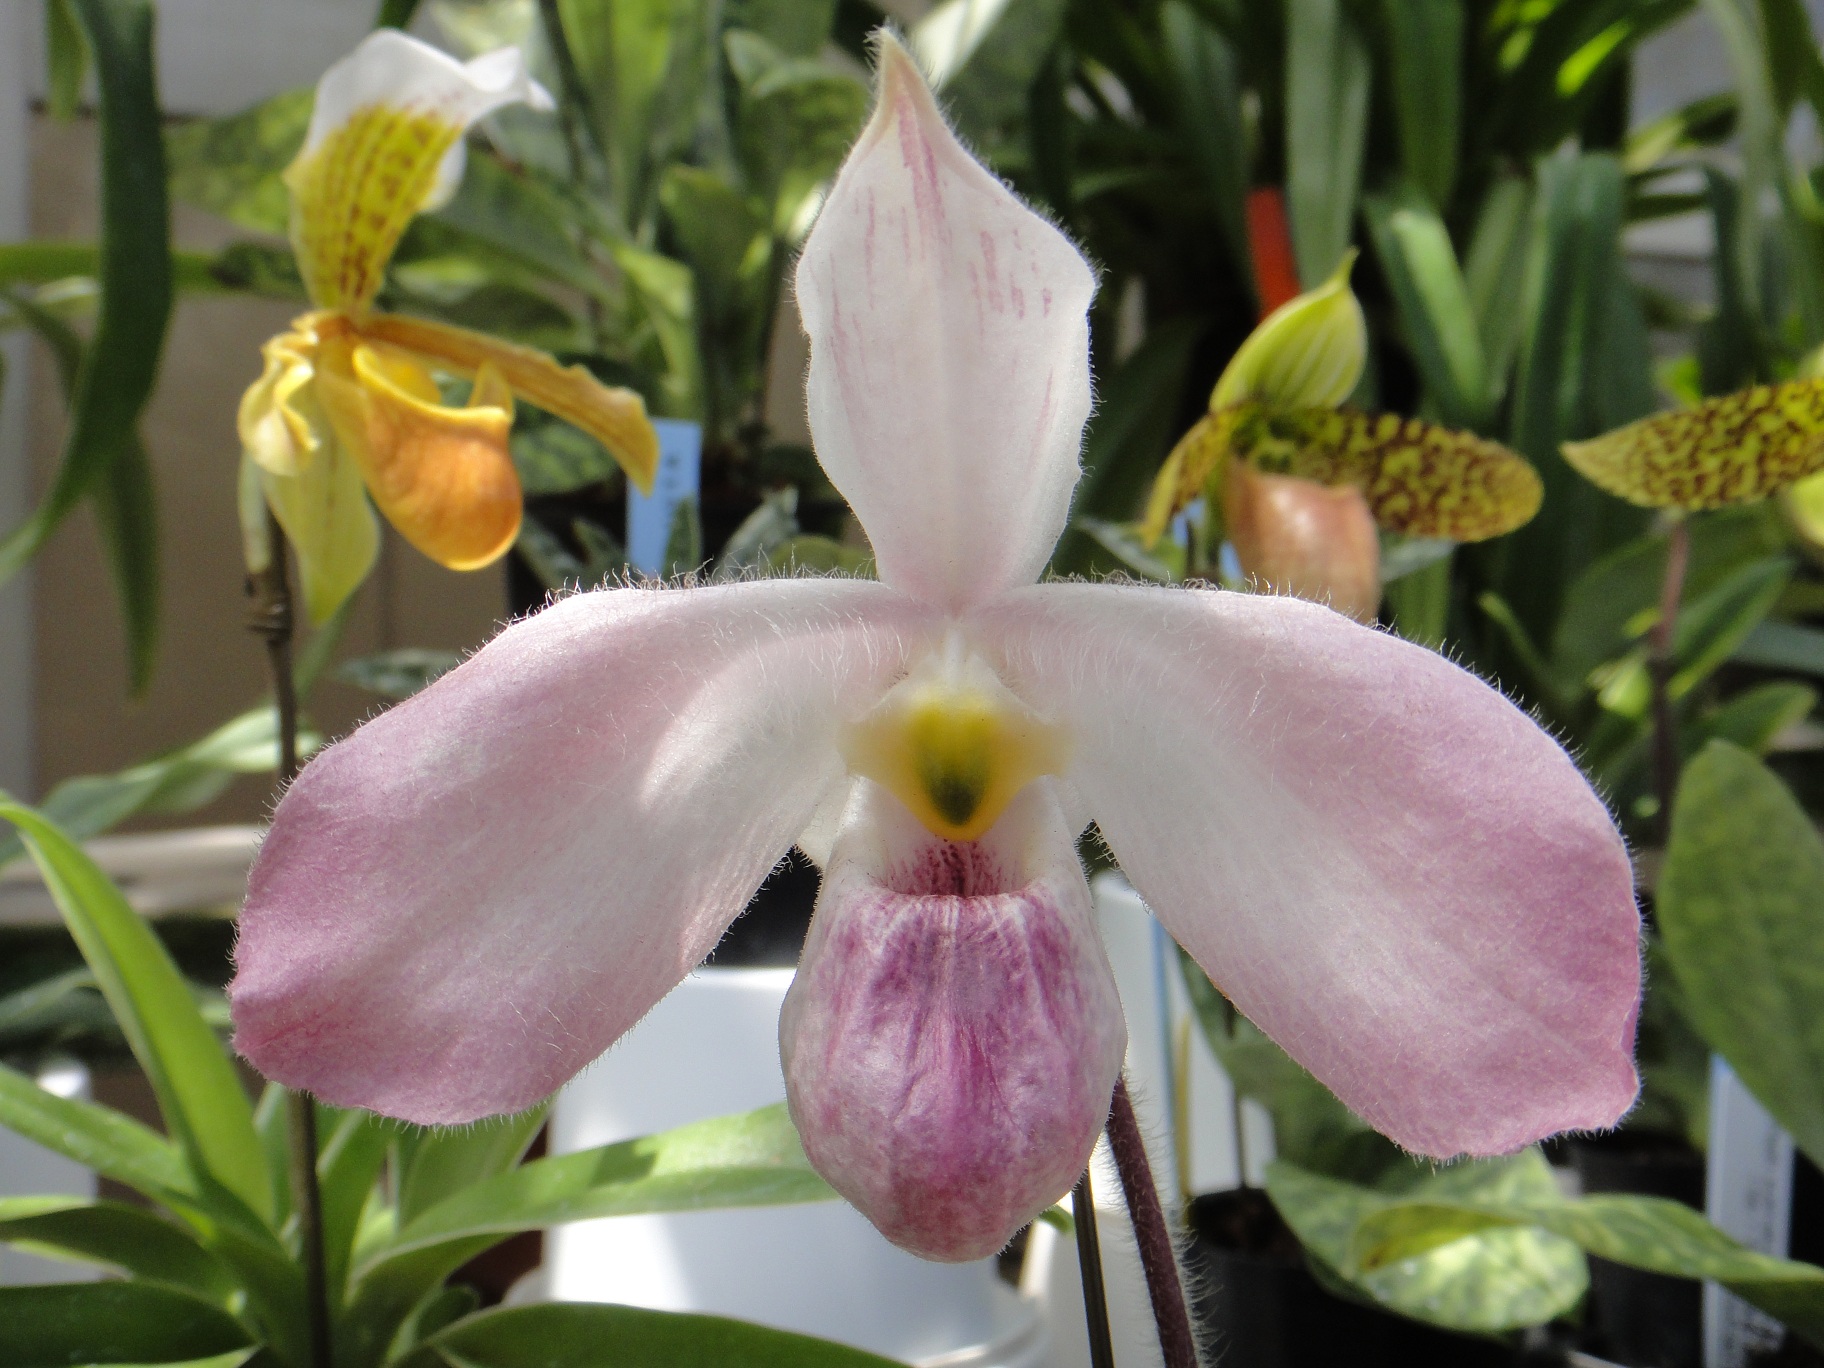 http://orchids.la.coocan.jp/Paphiopedilum/Paphiopedilum%20vietnamense/DSC05437.JPG